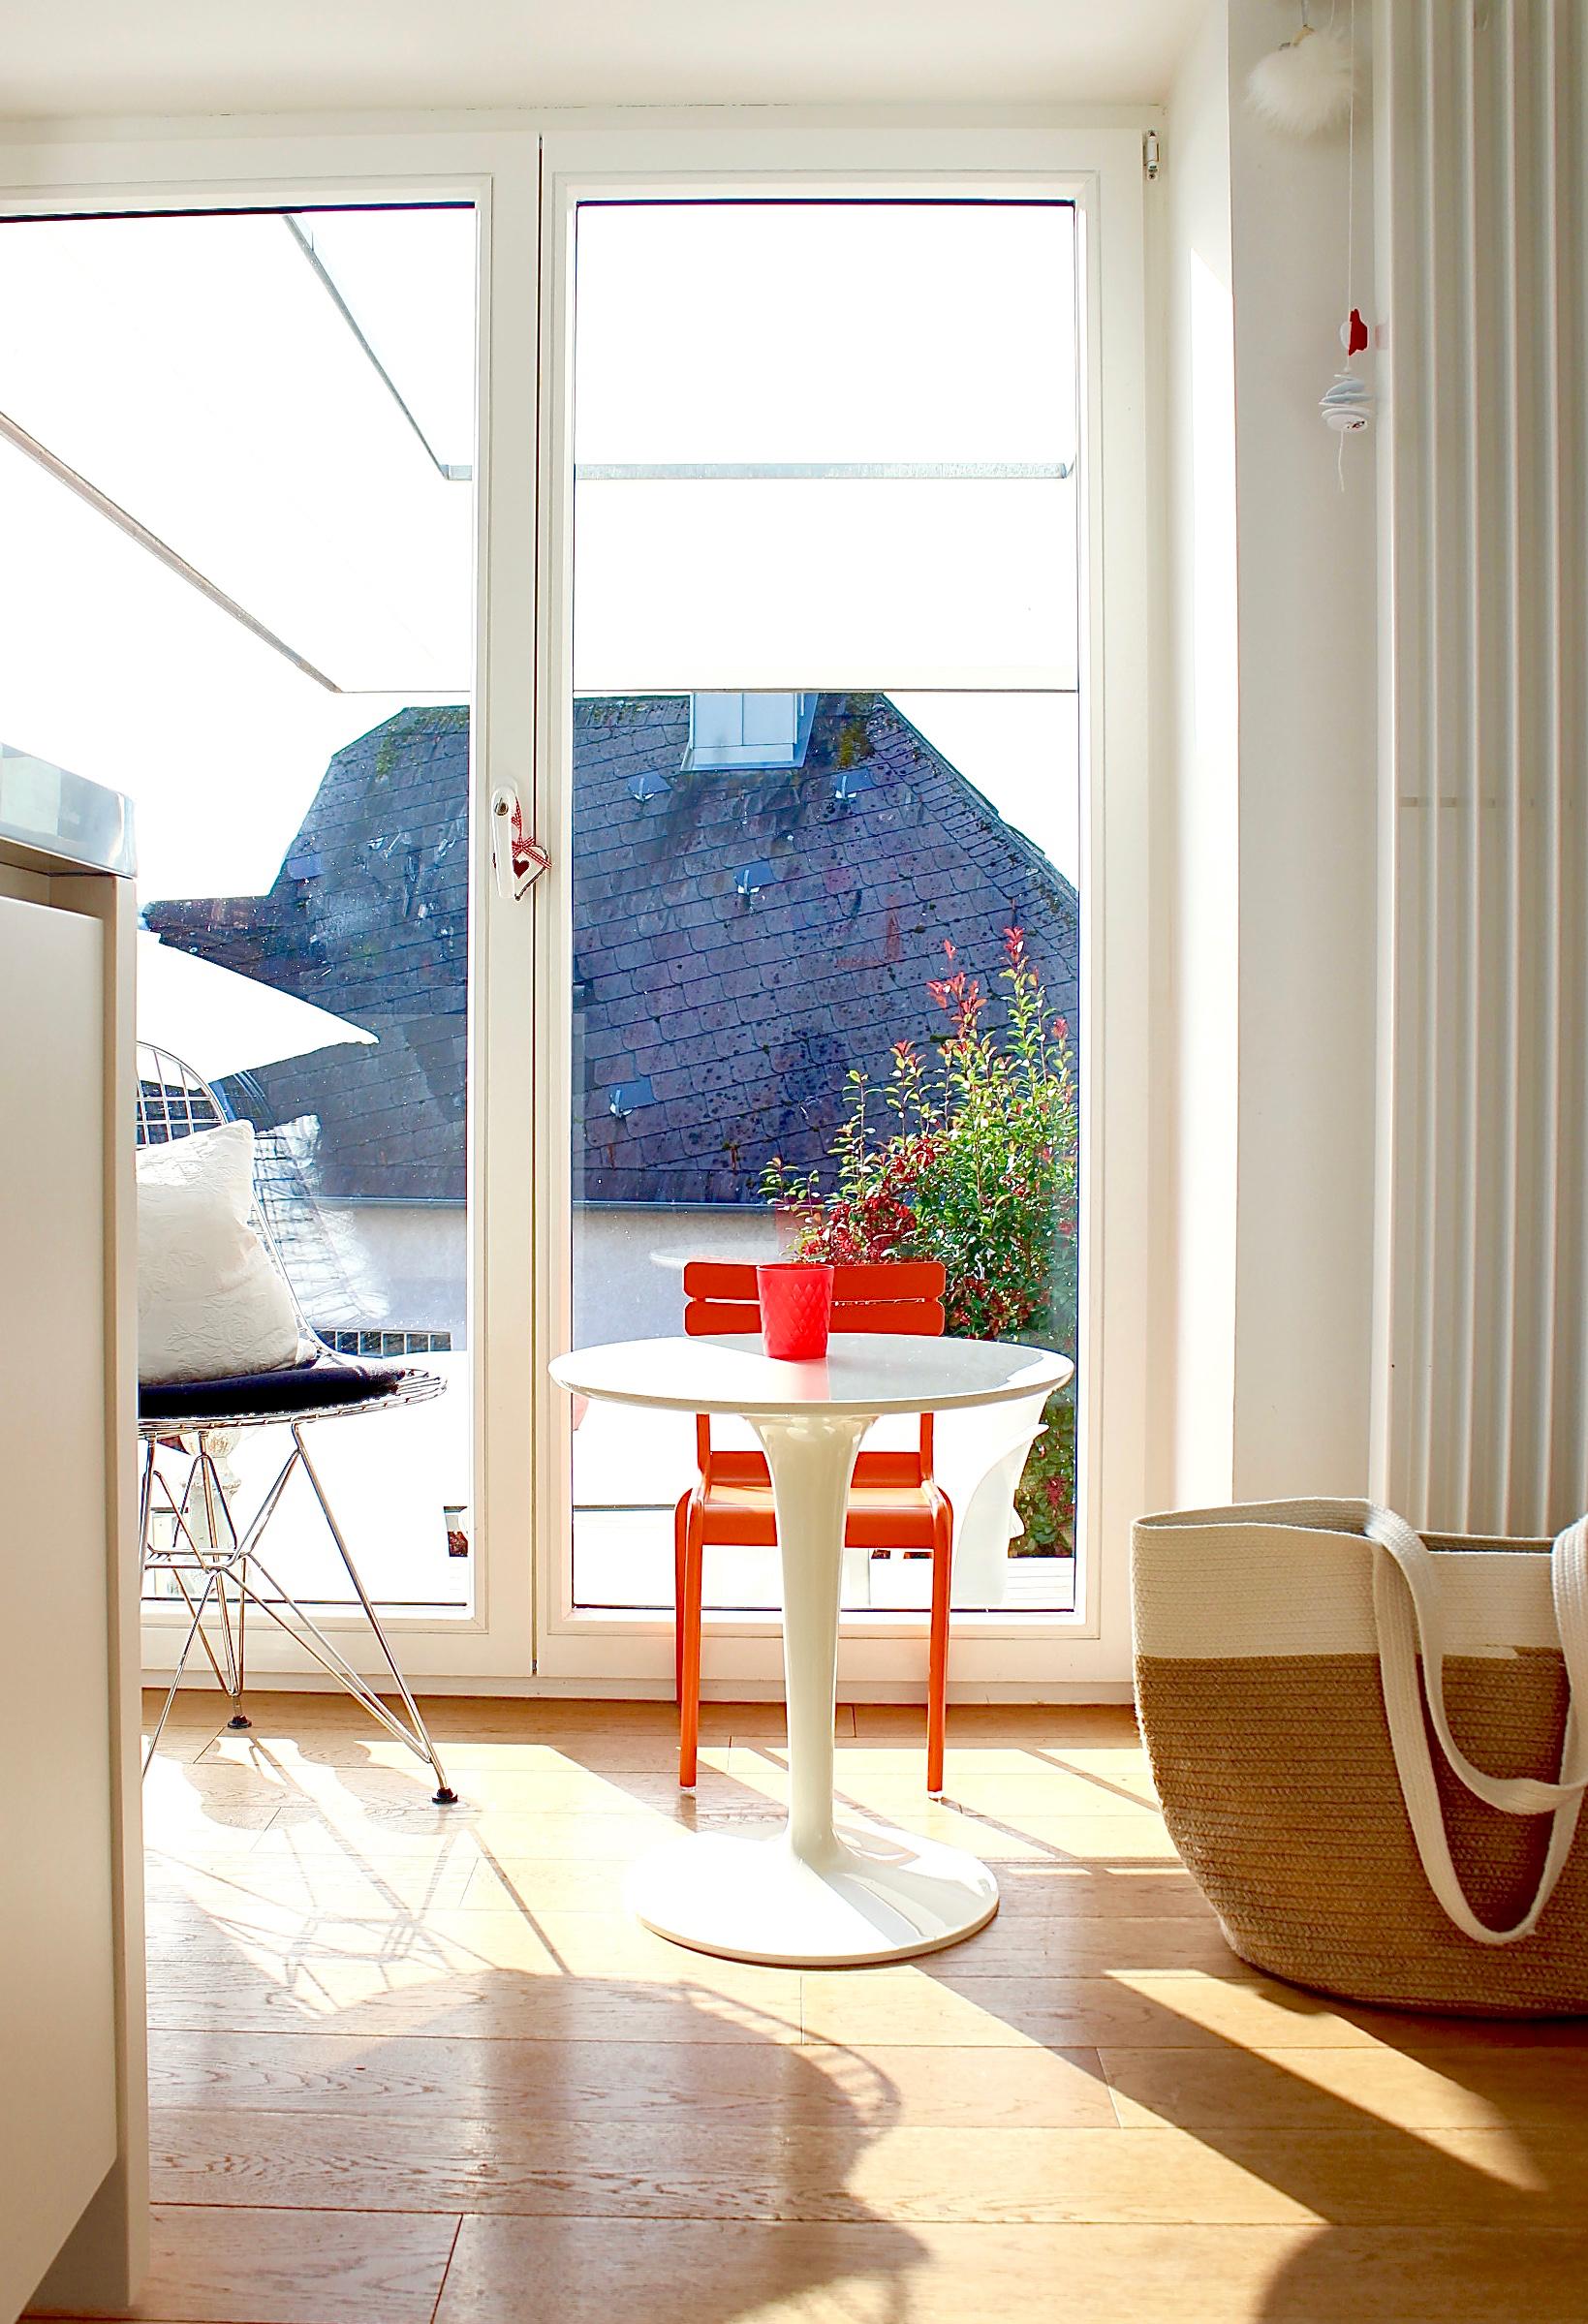 bunter Sitzplatz #interior #sitzplatz #küche #interiordesigner #interiordesign #raumatmosphäre #bunt